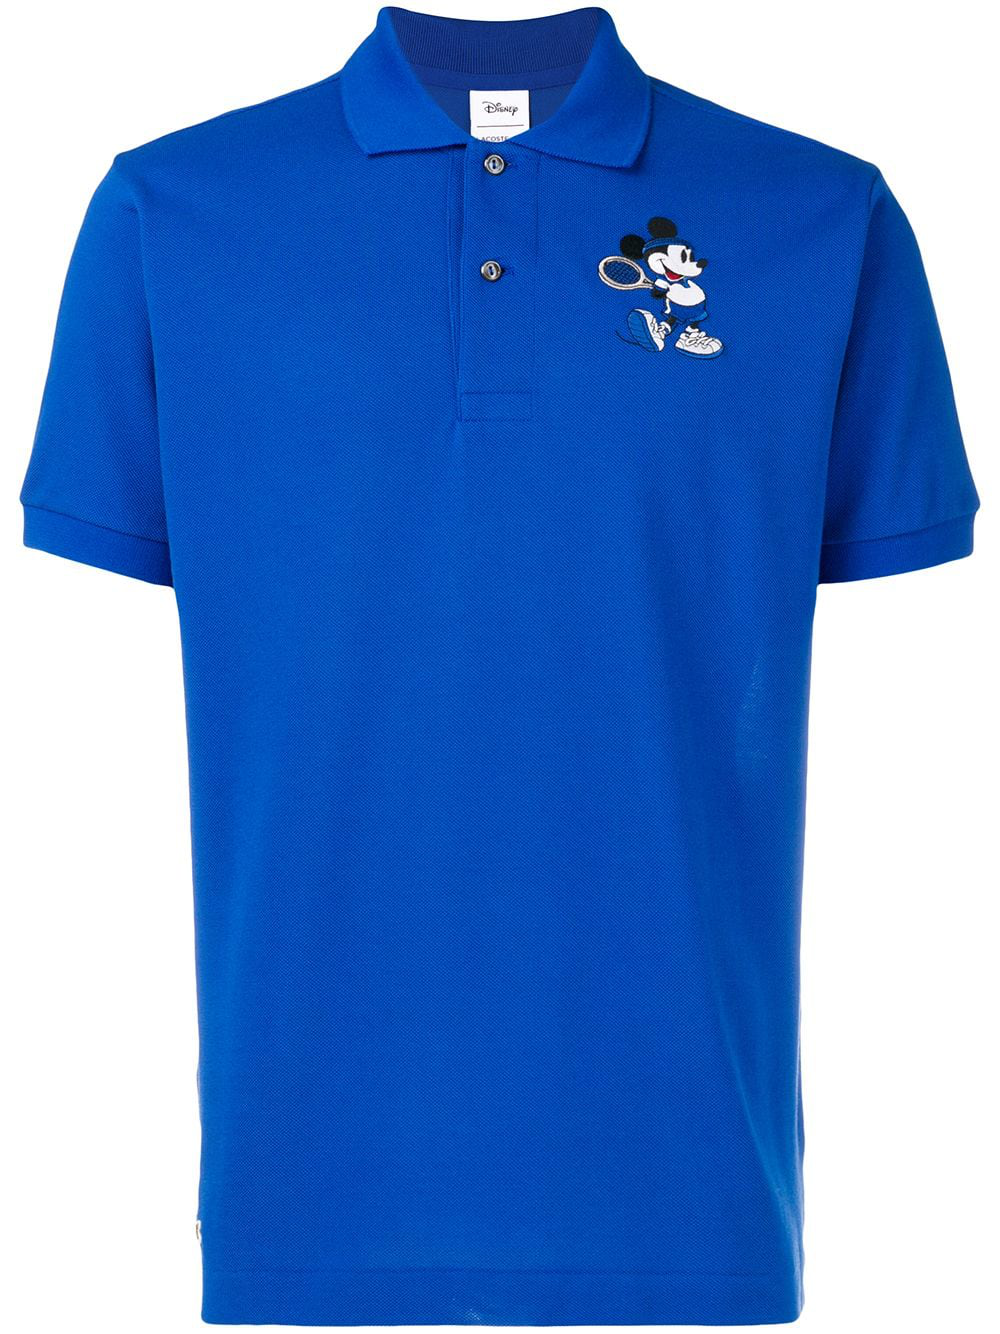 Lacoste Tennis Mickey Mouse Polo Shirt - Blue | ModeSens